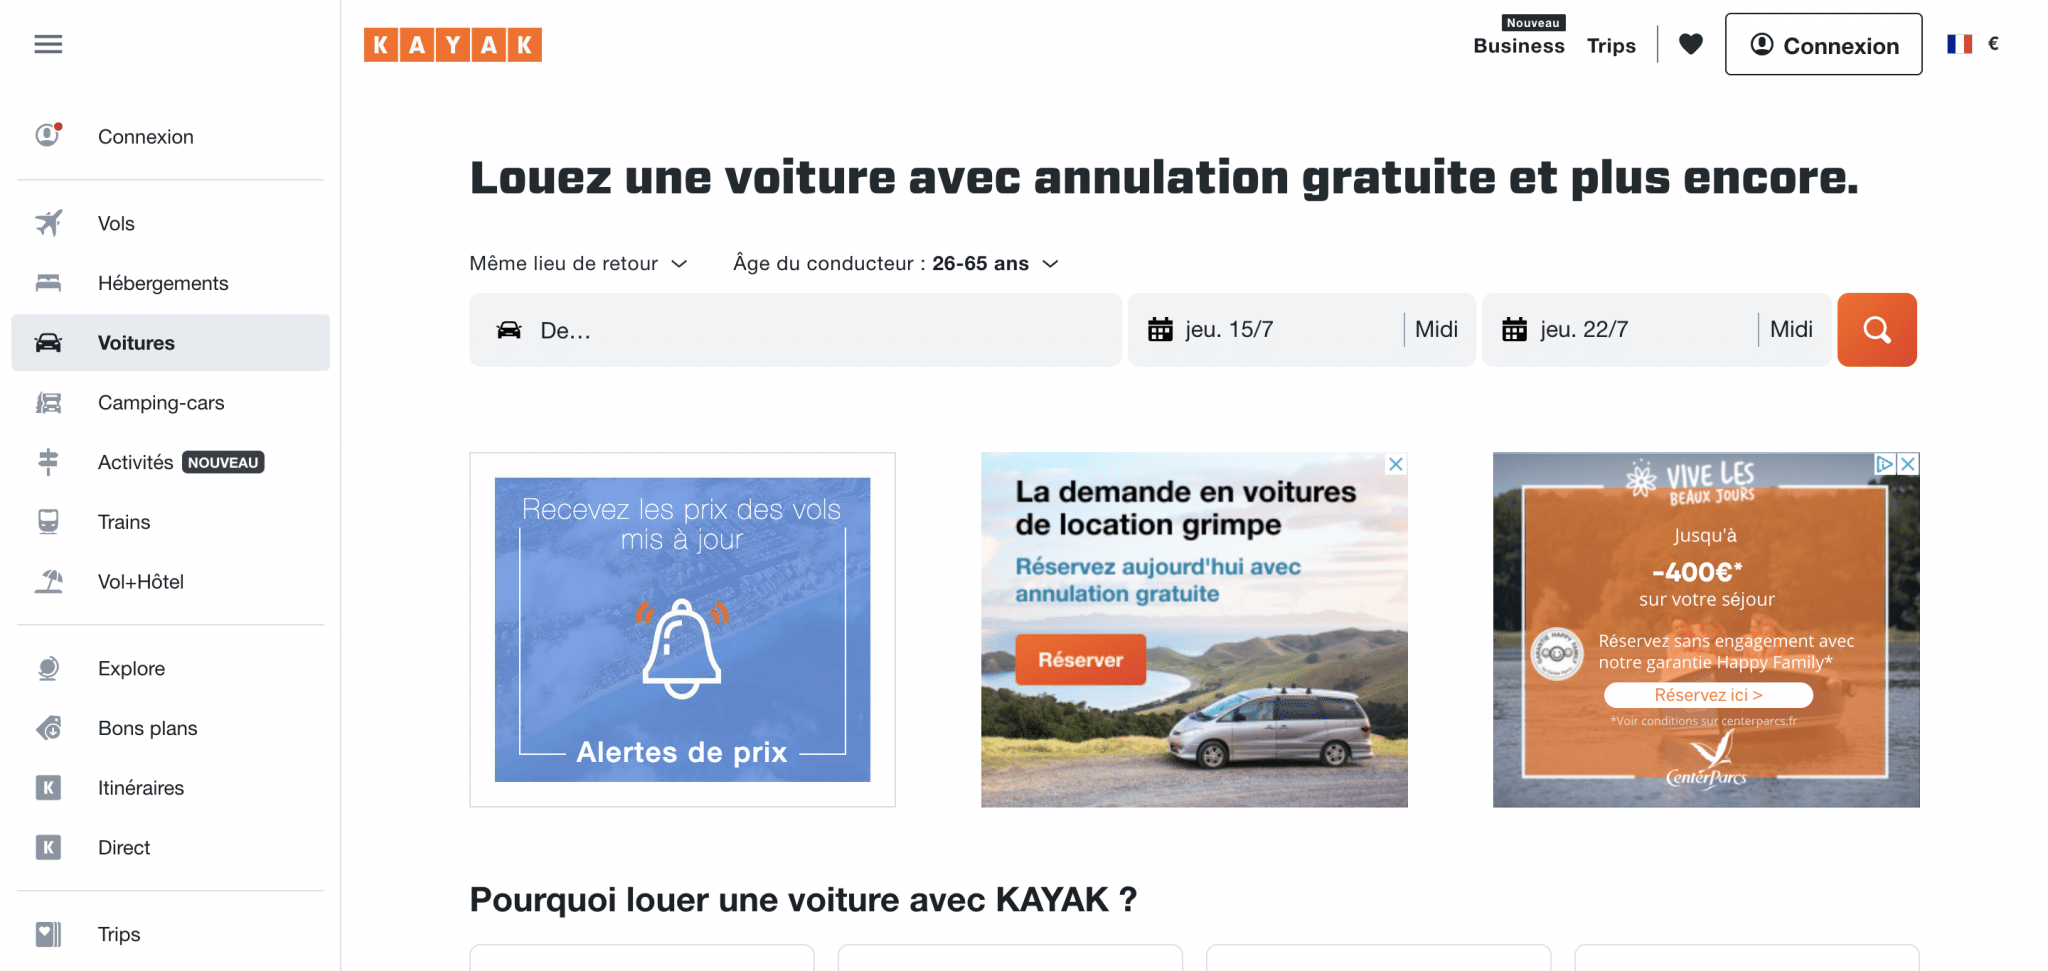 La page d'accueil du site Kayak, qui possède un bon nom de domaine.